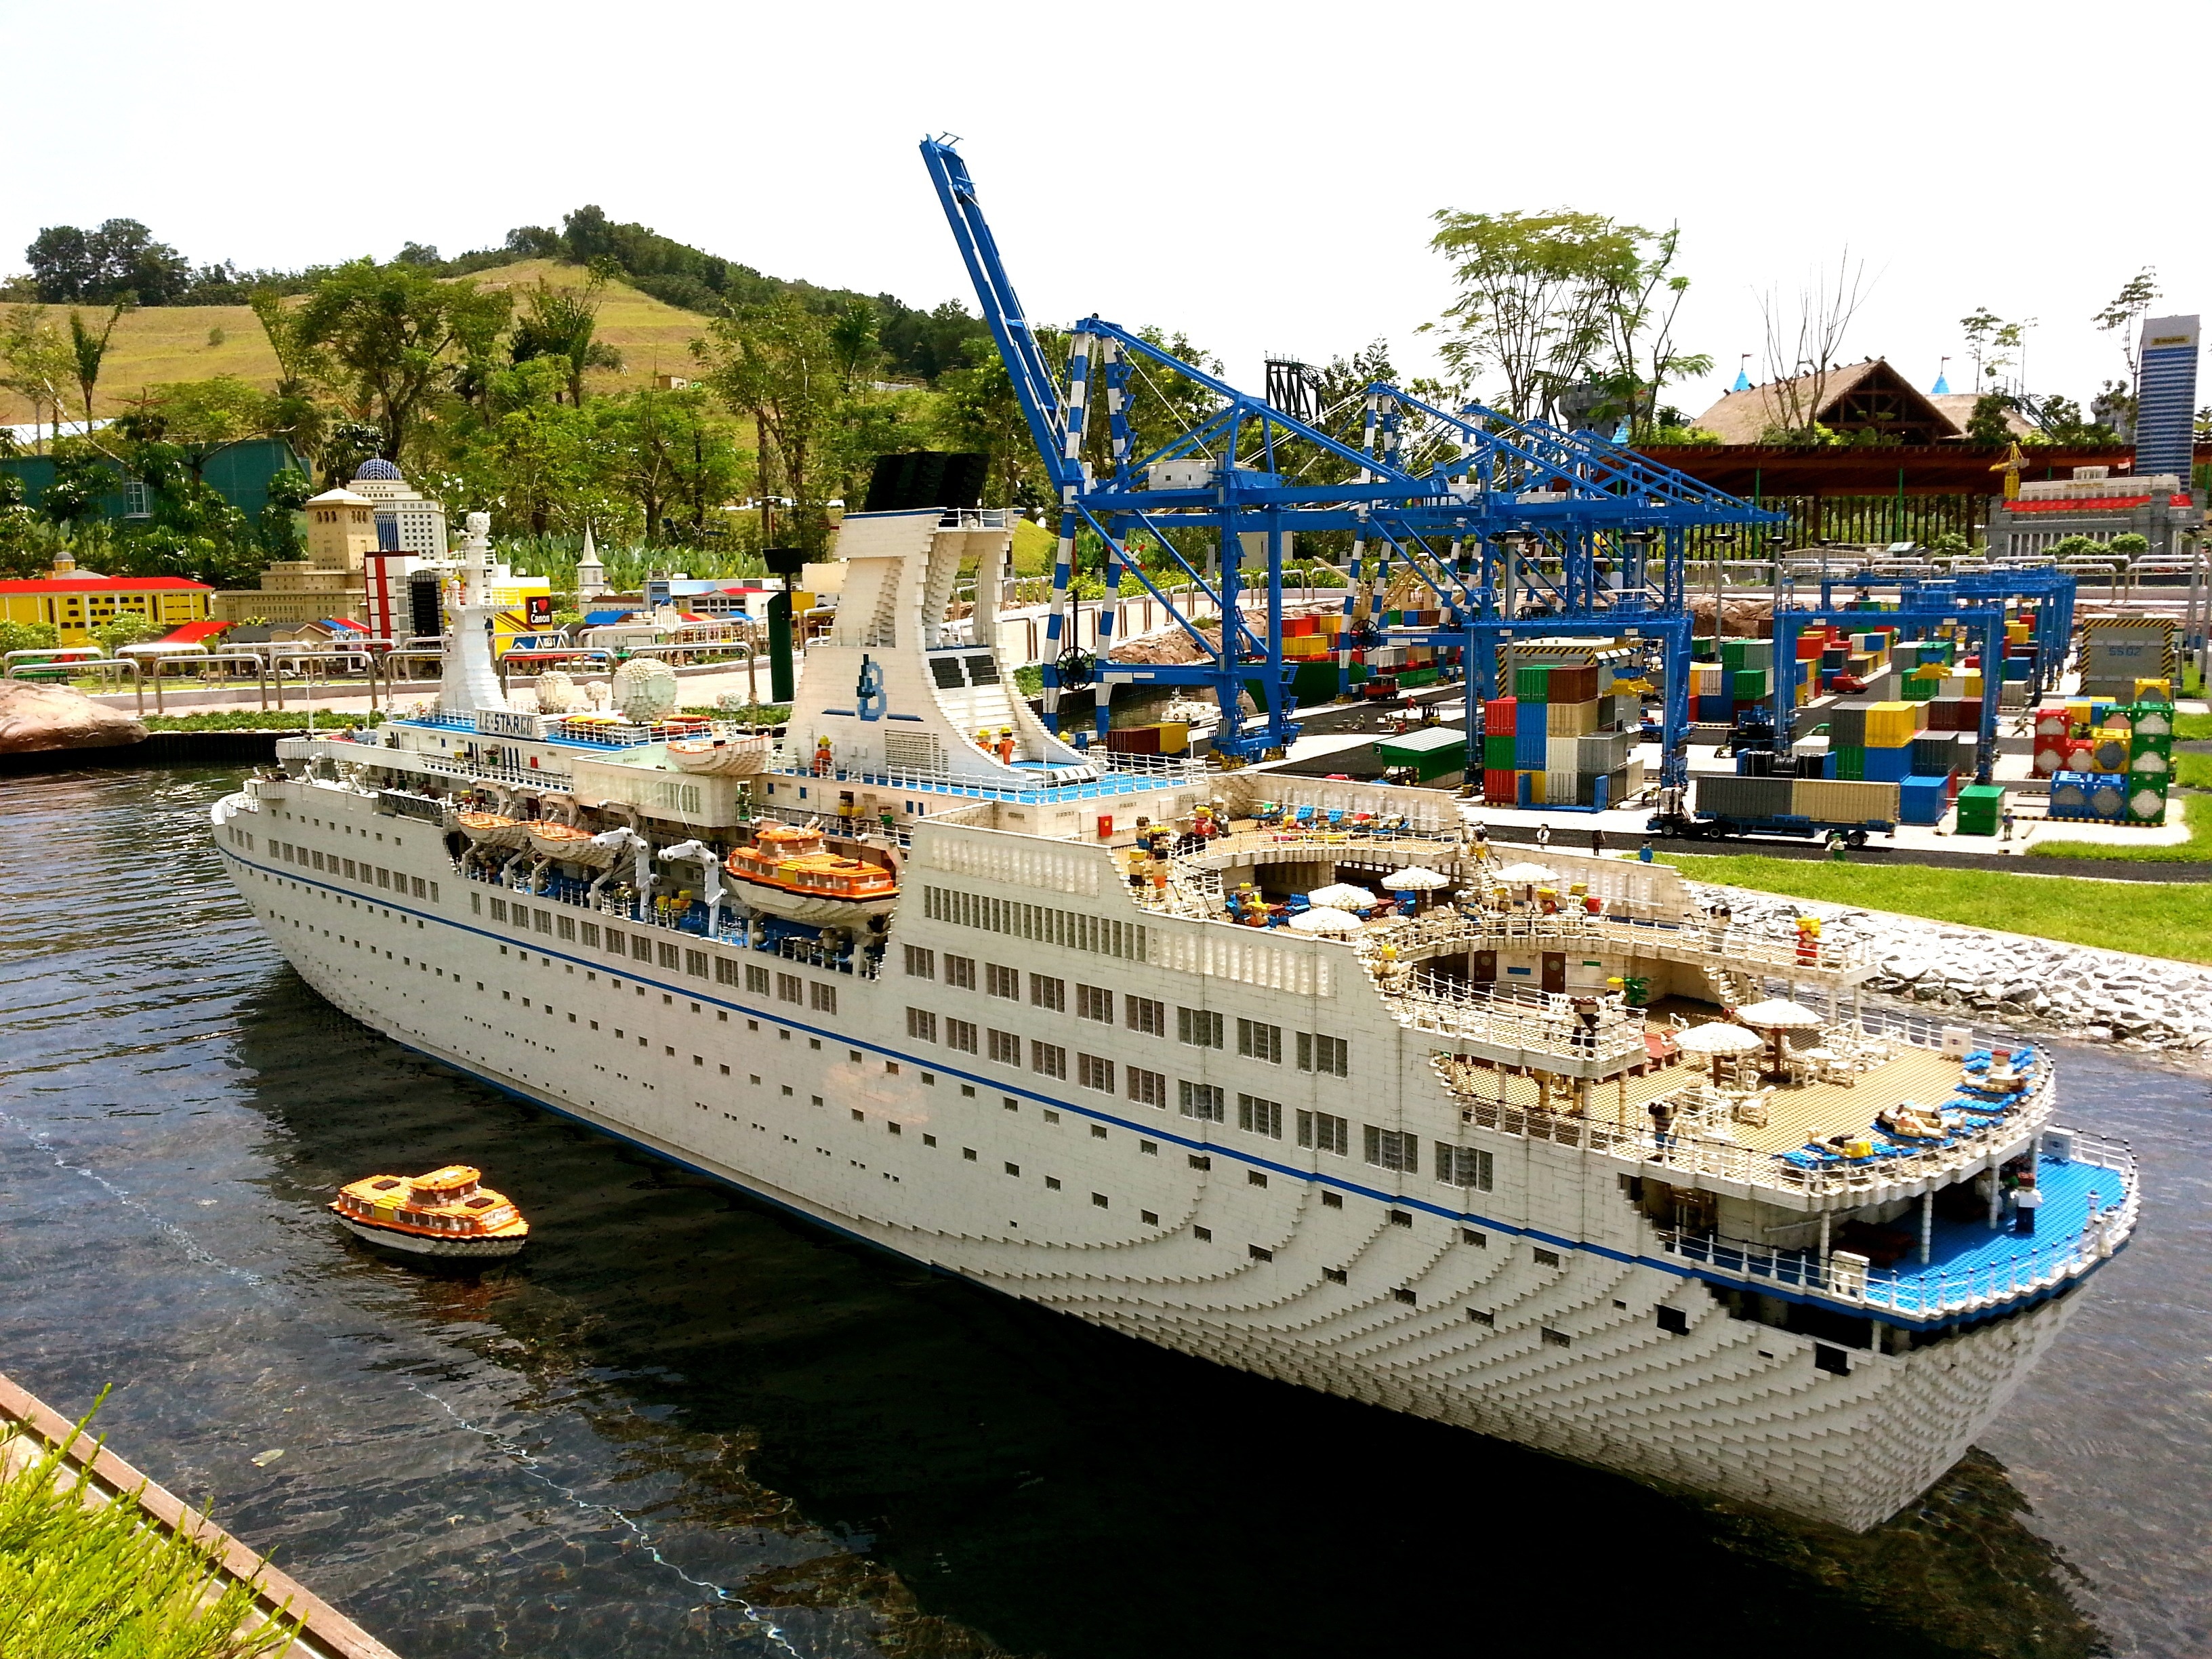 white and blue cruiseship toy